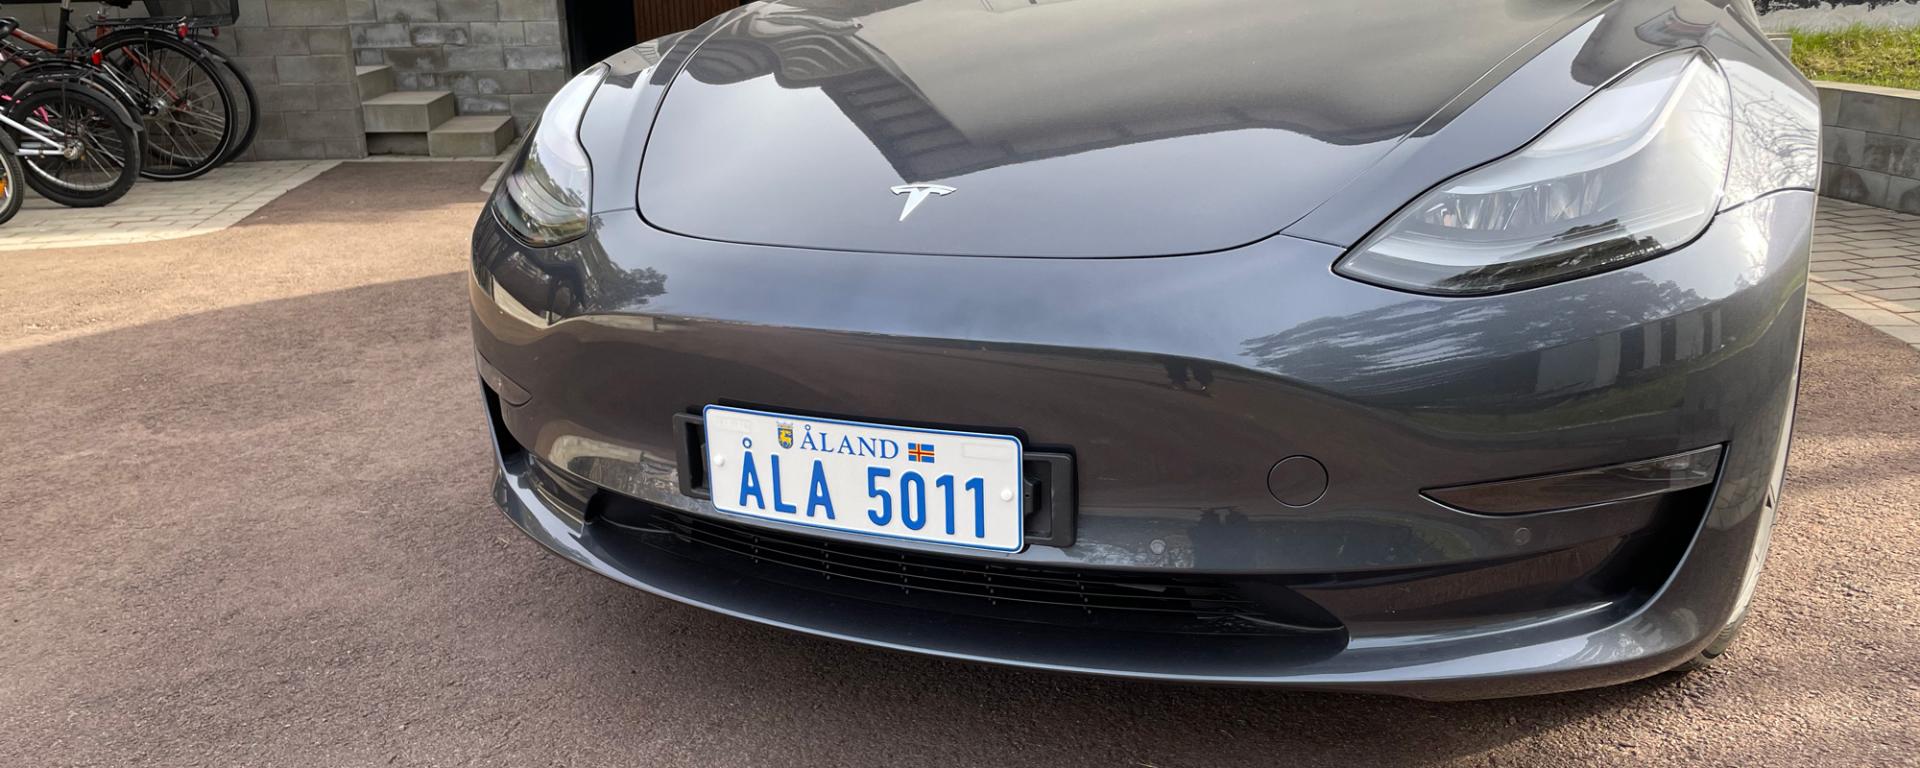 Åländsk registerskylt på Tesla 3.